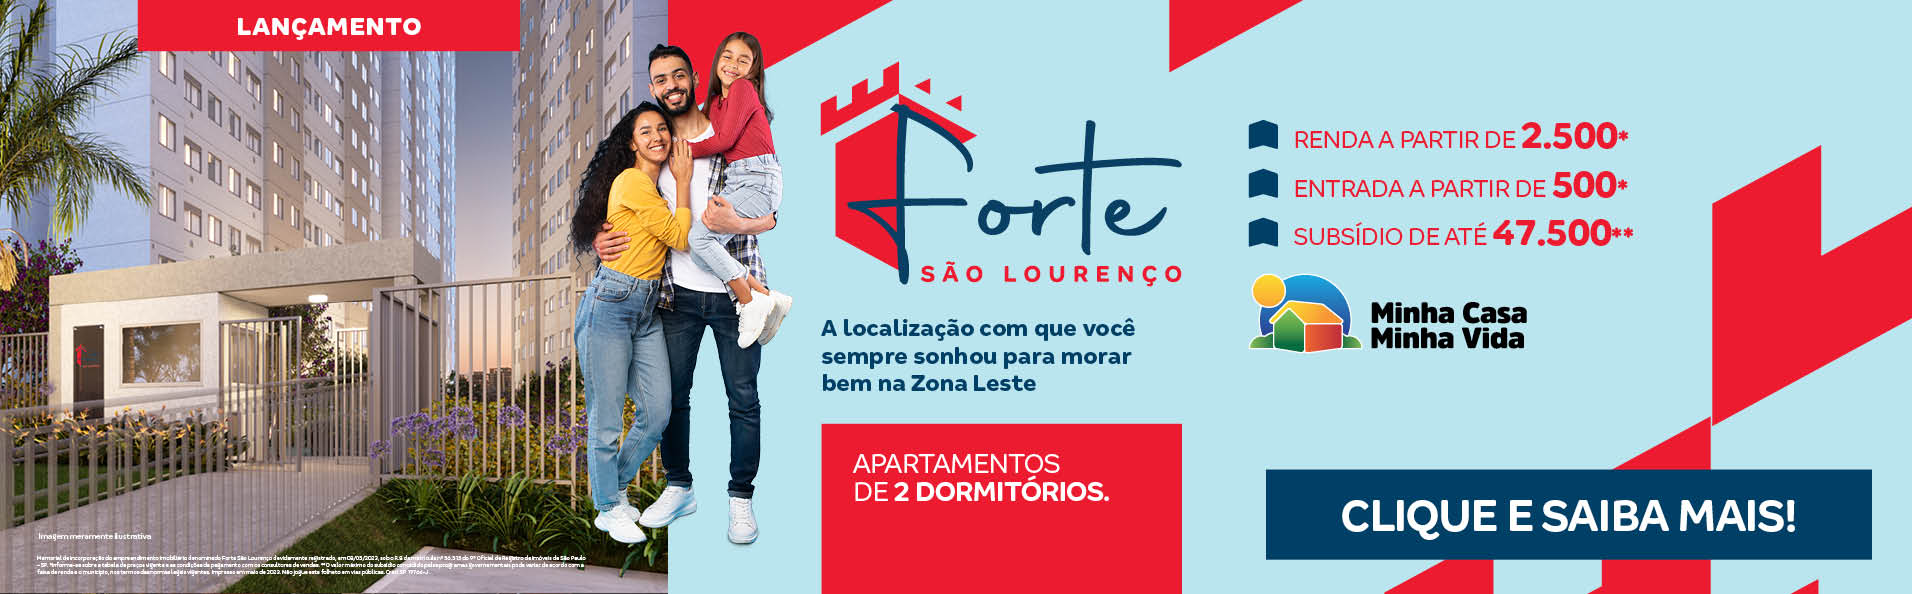 Descubra como é morar na melhor região da Zona Leste de São Paulo no lançamento da Construtora Tenda, Forte São Lourenço.